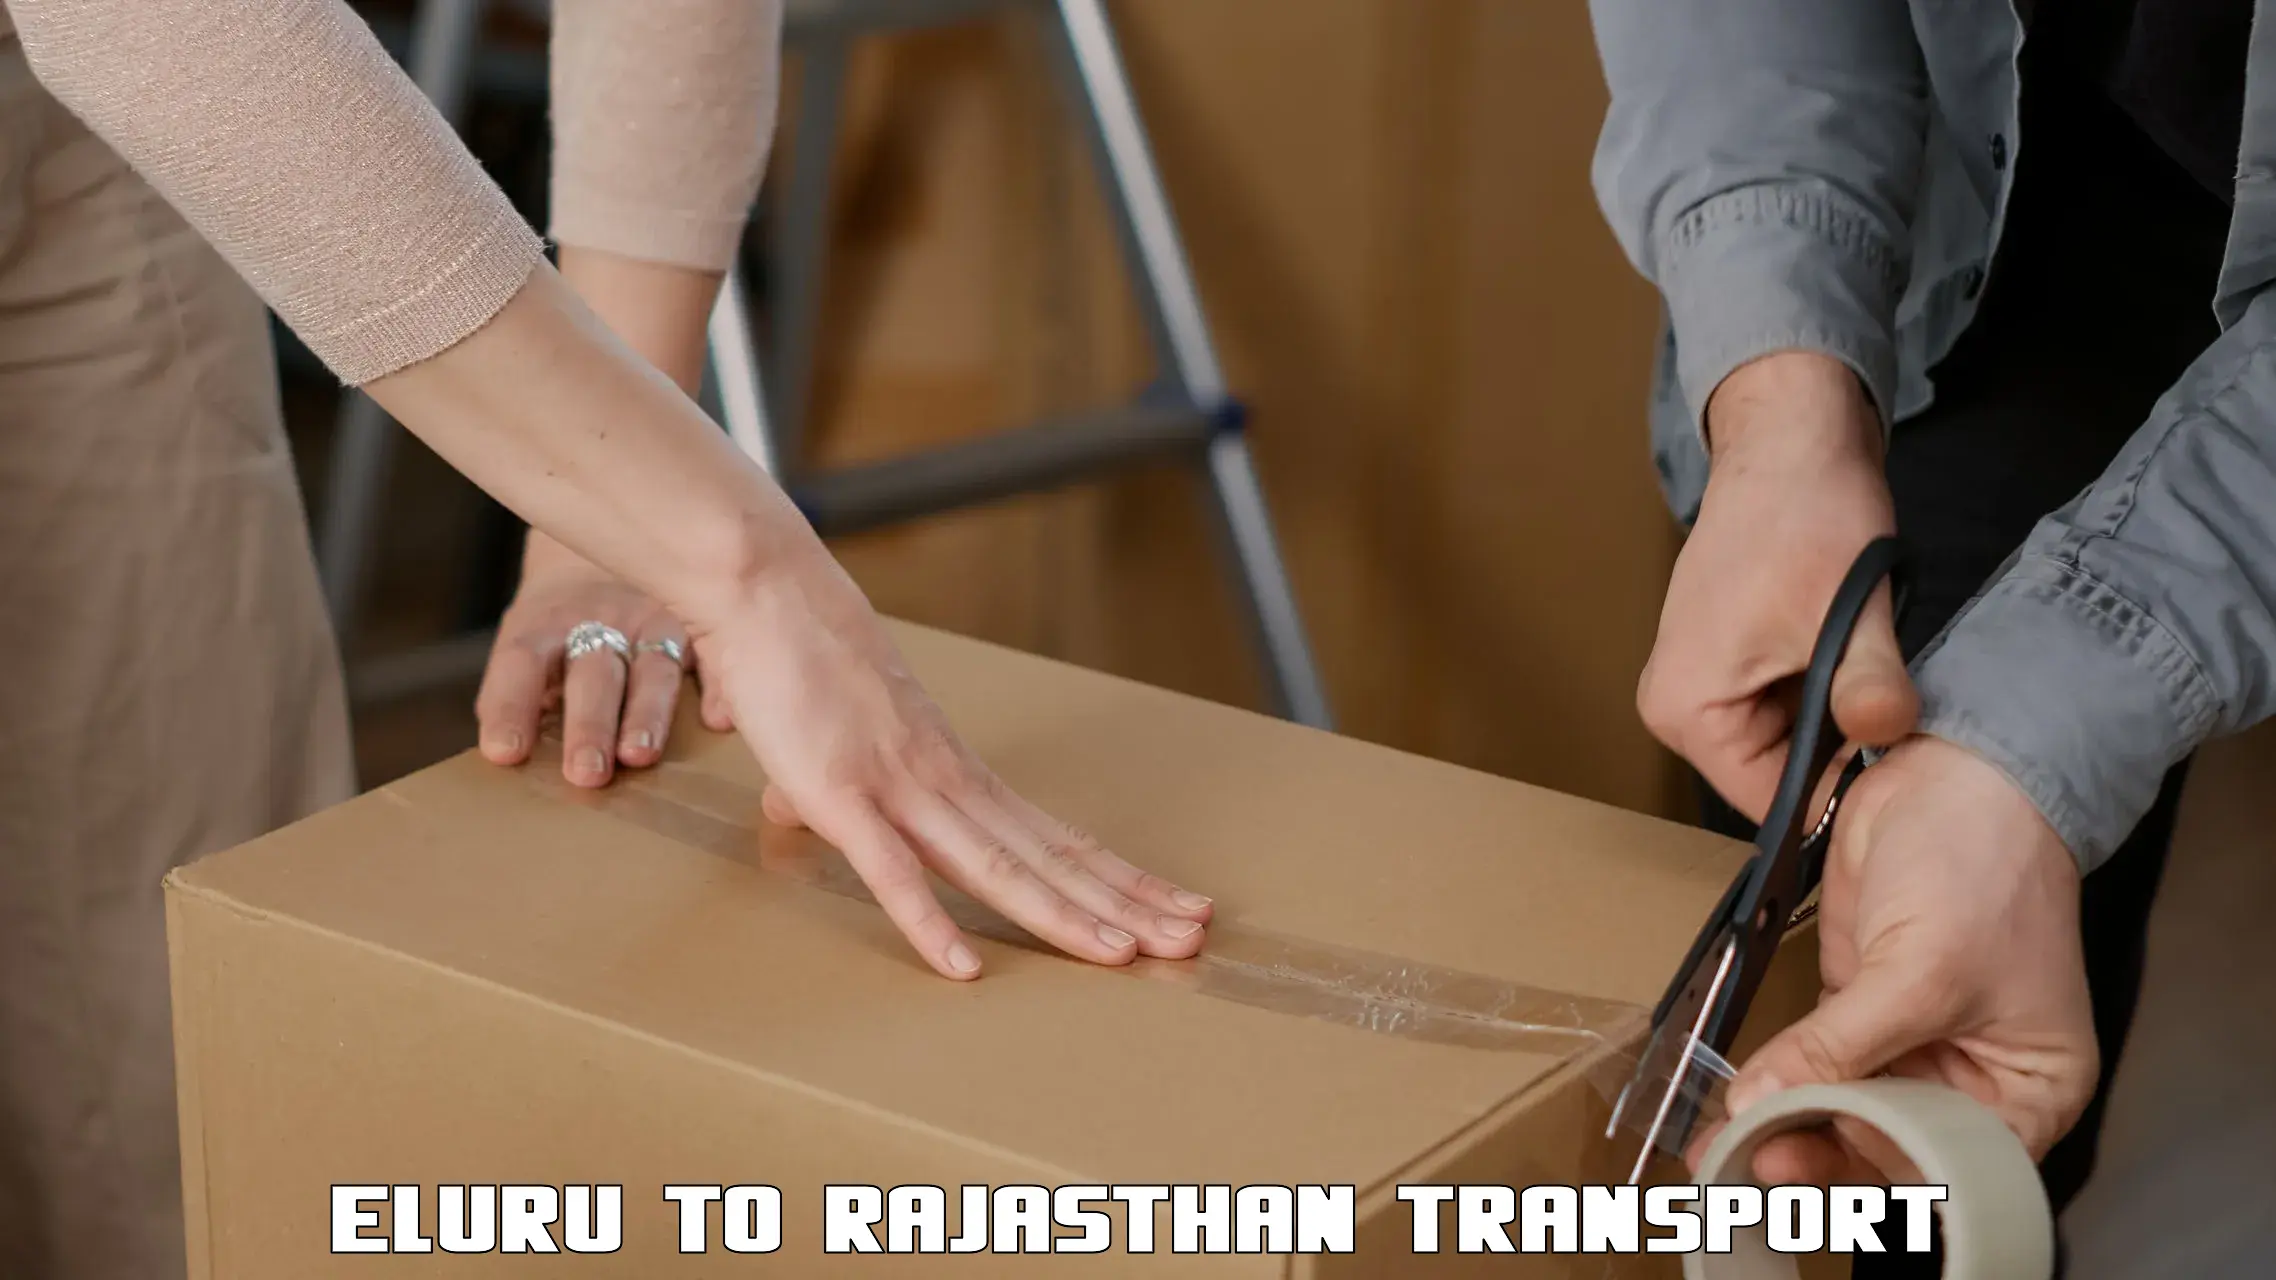 Air freight transport services Eluru to Pratapgarh Rajasthan